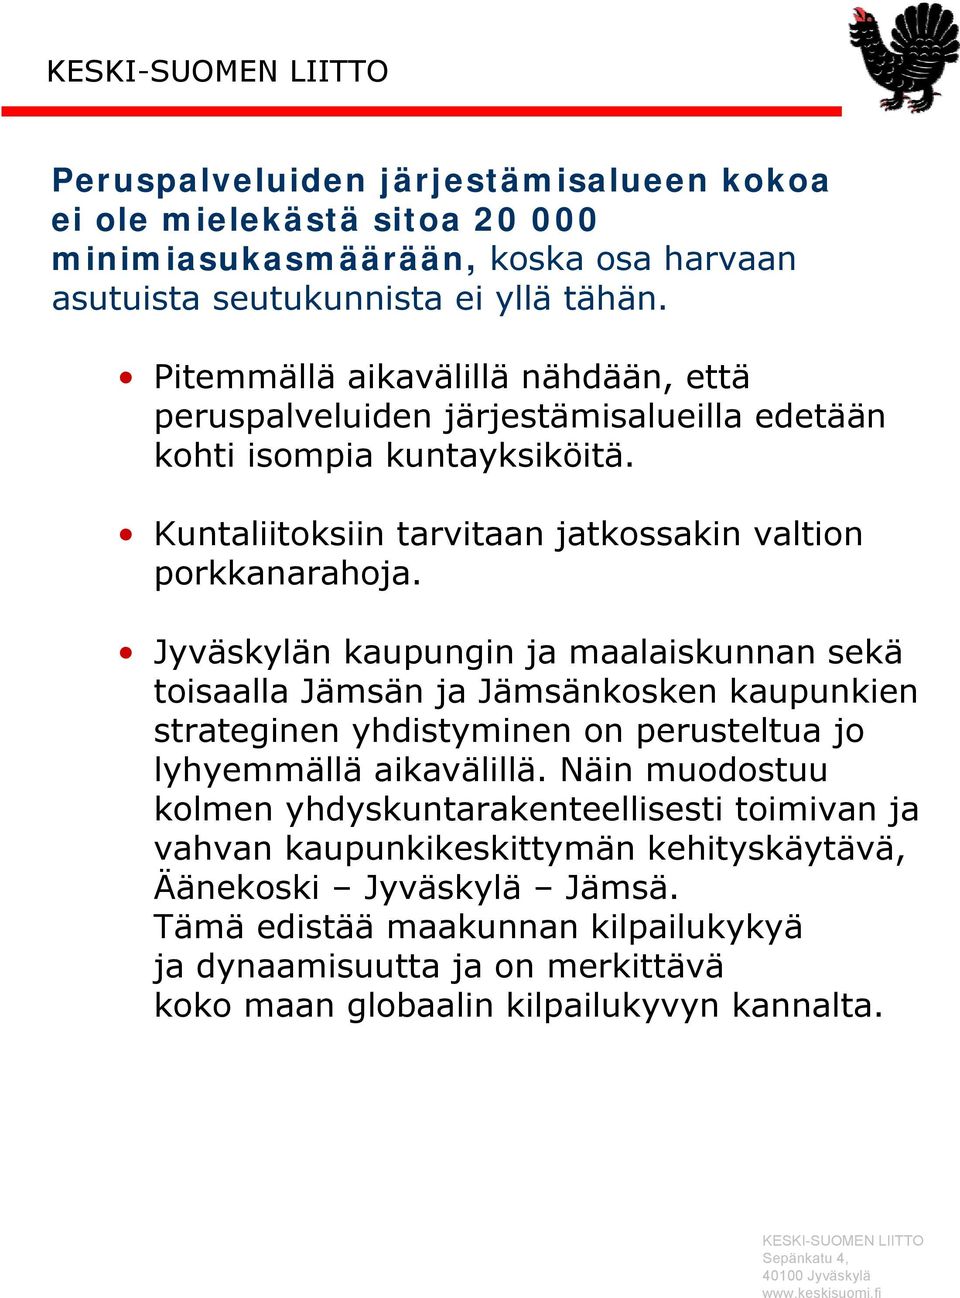 Jyväskylän kaupungin ja maalaiskunnan sekä toisaalla Jämsän ja Jämsänkosken kaupunkien strateginen yhdistyminen on perusteltua jo lyhyemmällä aikavälillä.